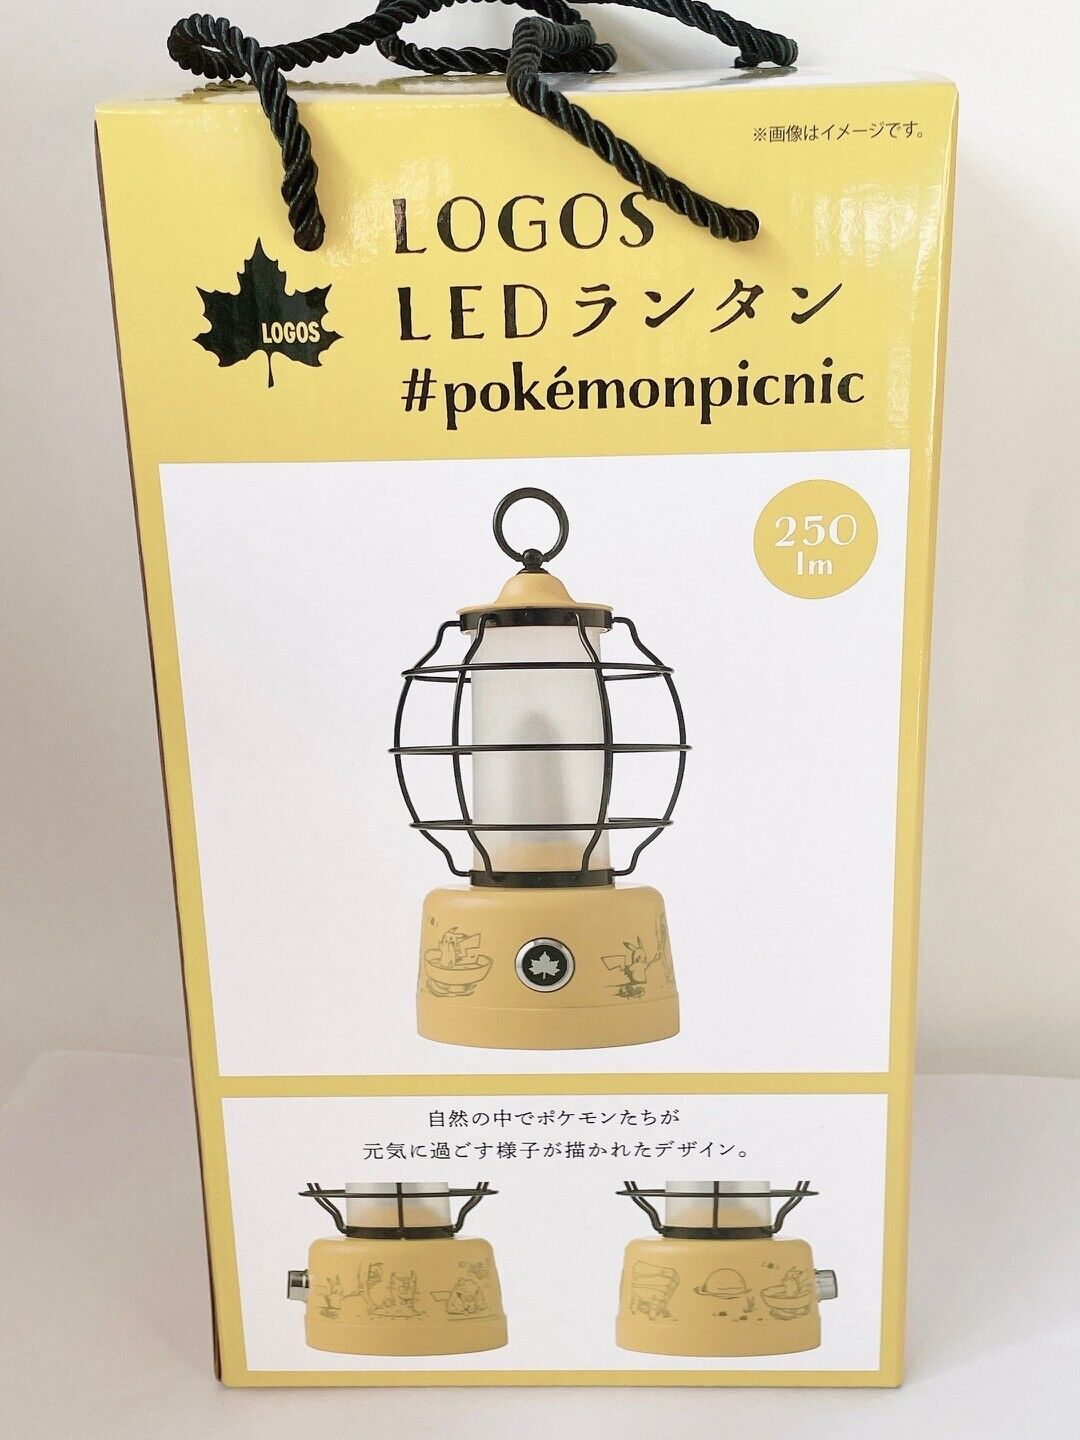 Pokemon Center Original LOGOS LED lantern Picnic camping brand 250 Lumen